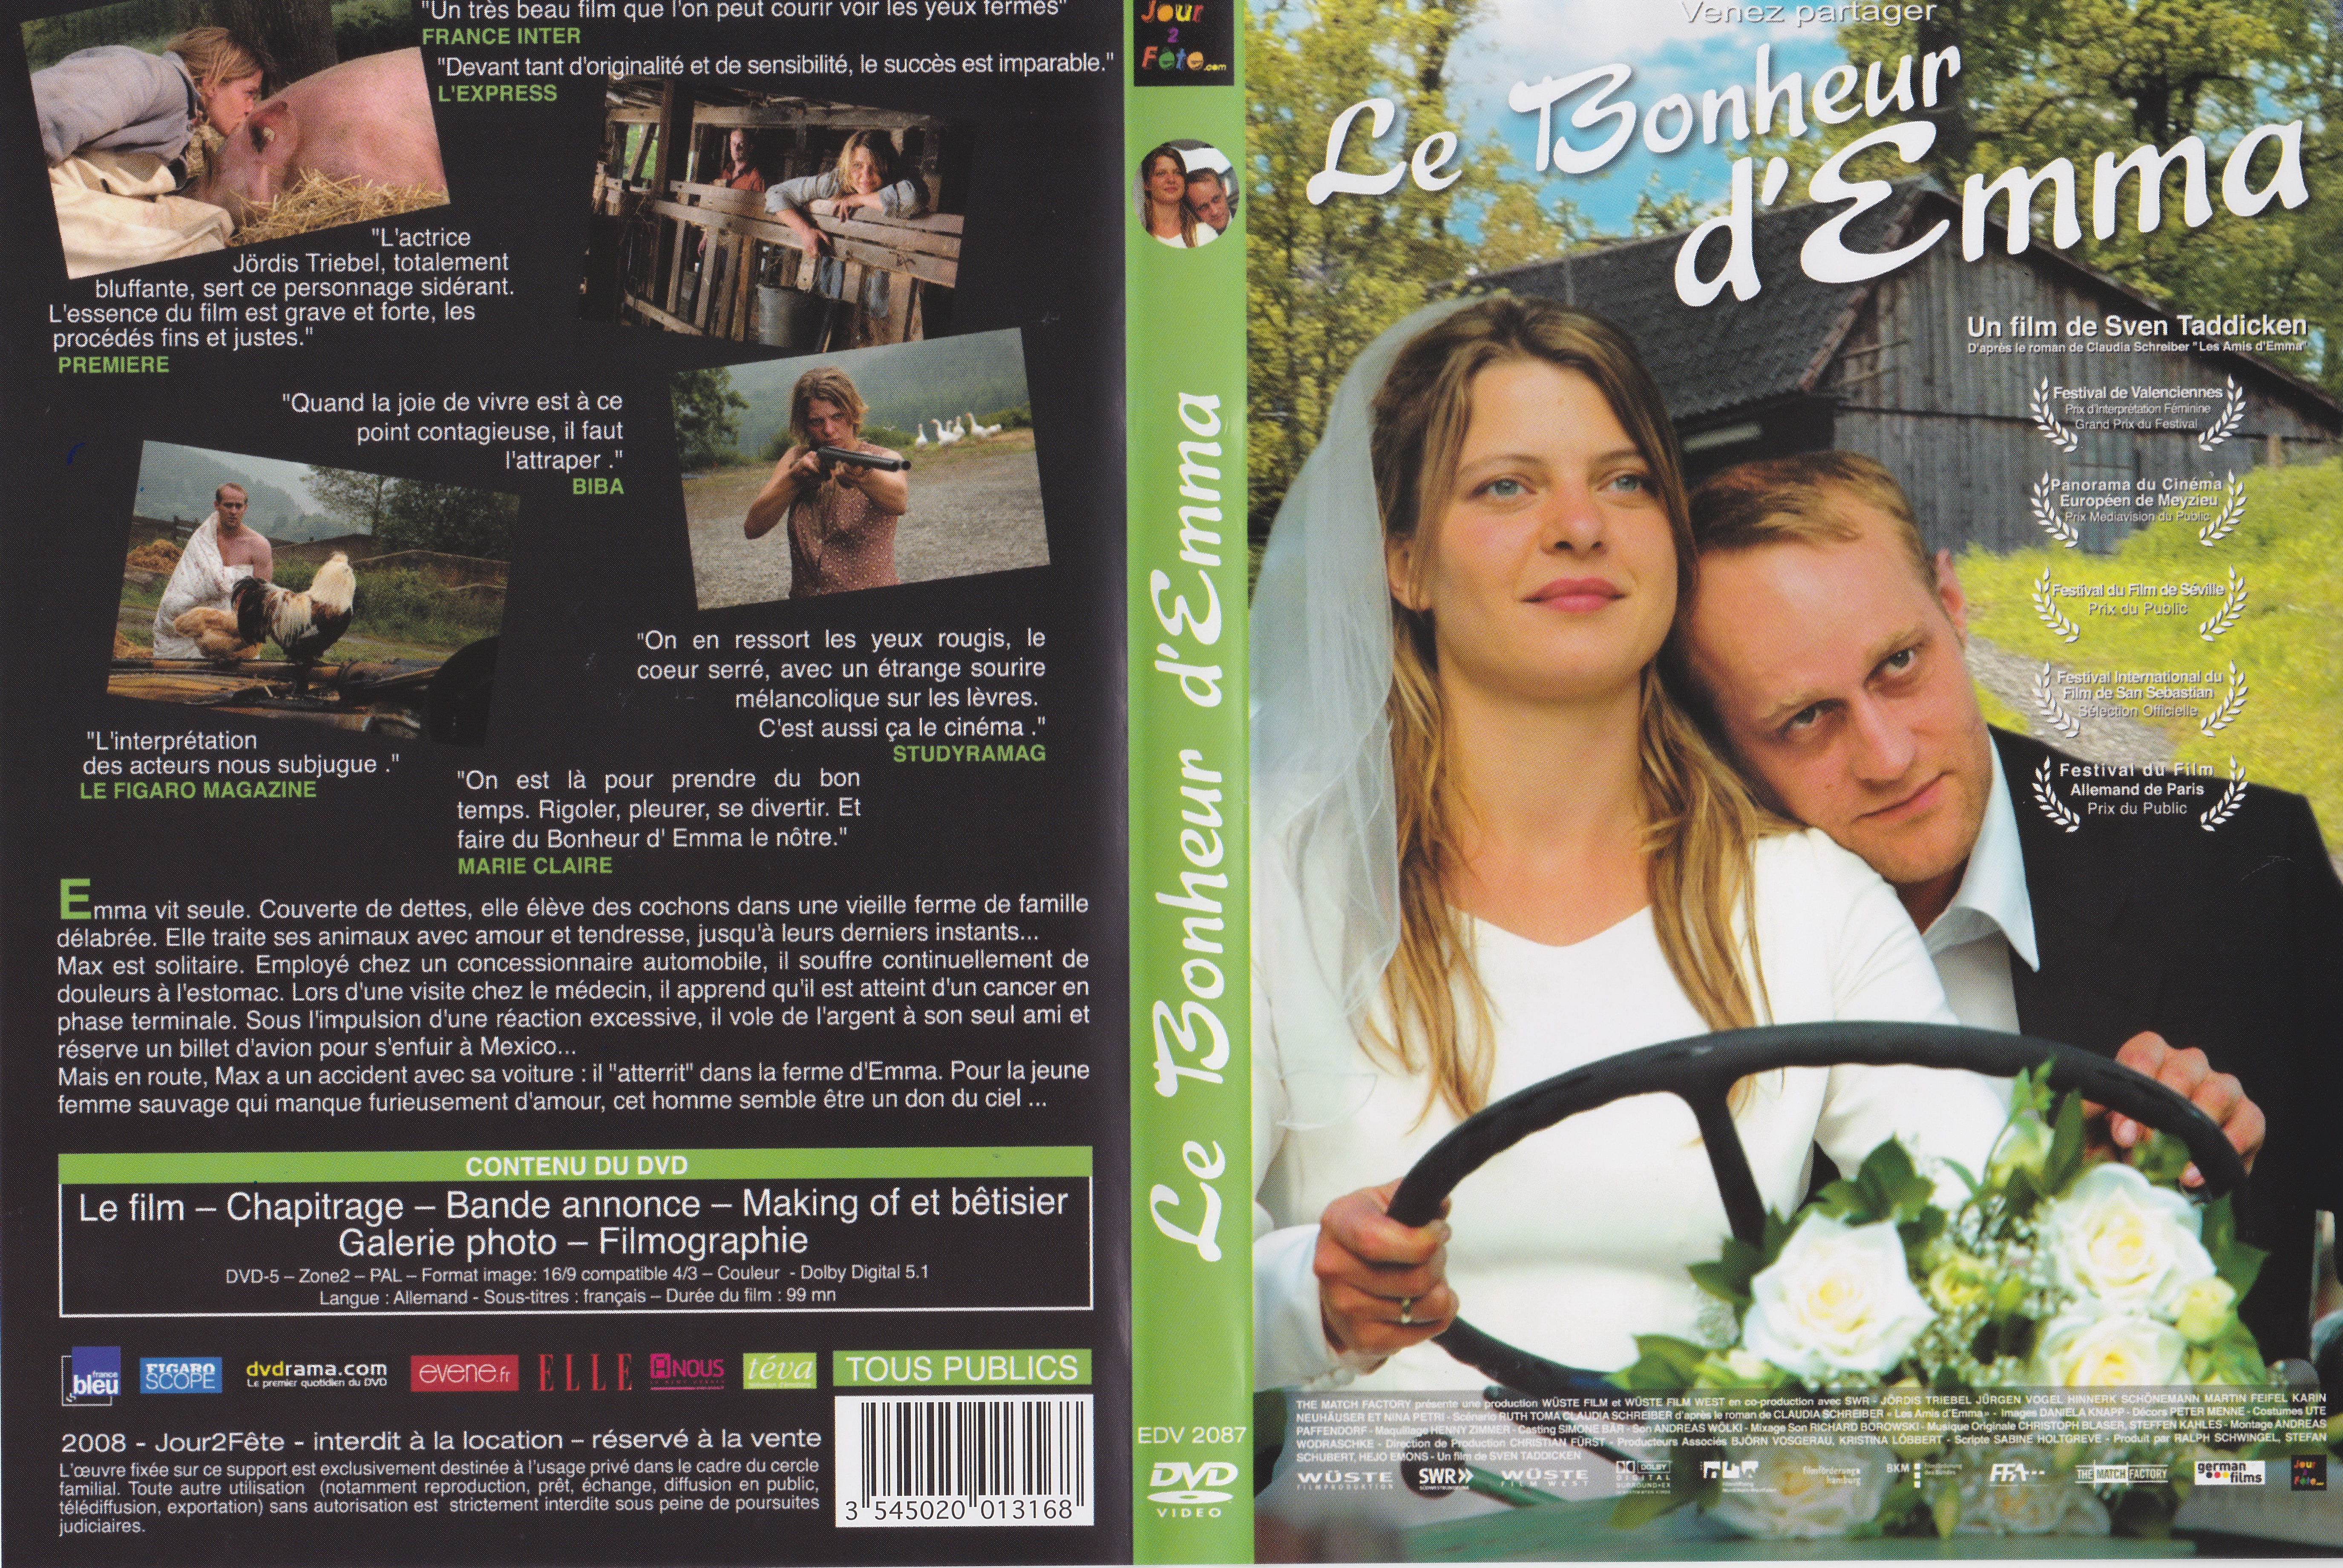 Jaquette DVD Le bonheur d